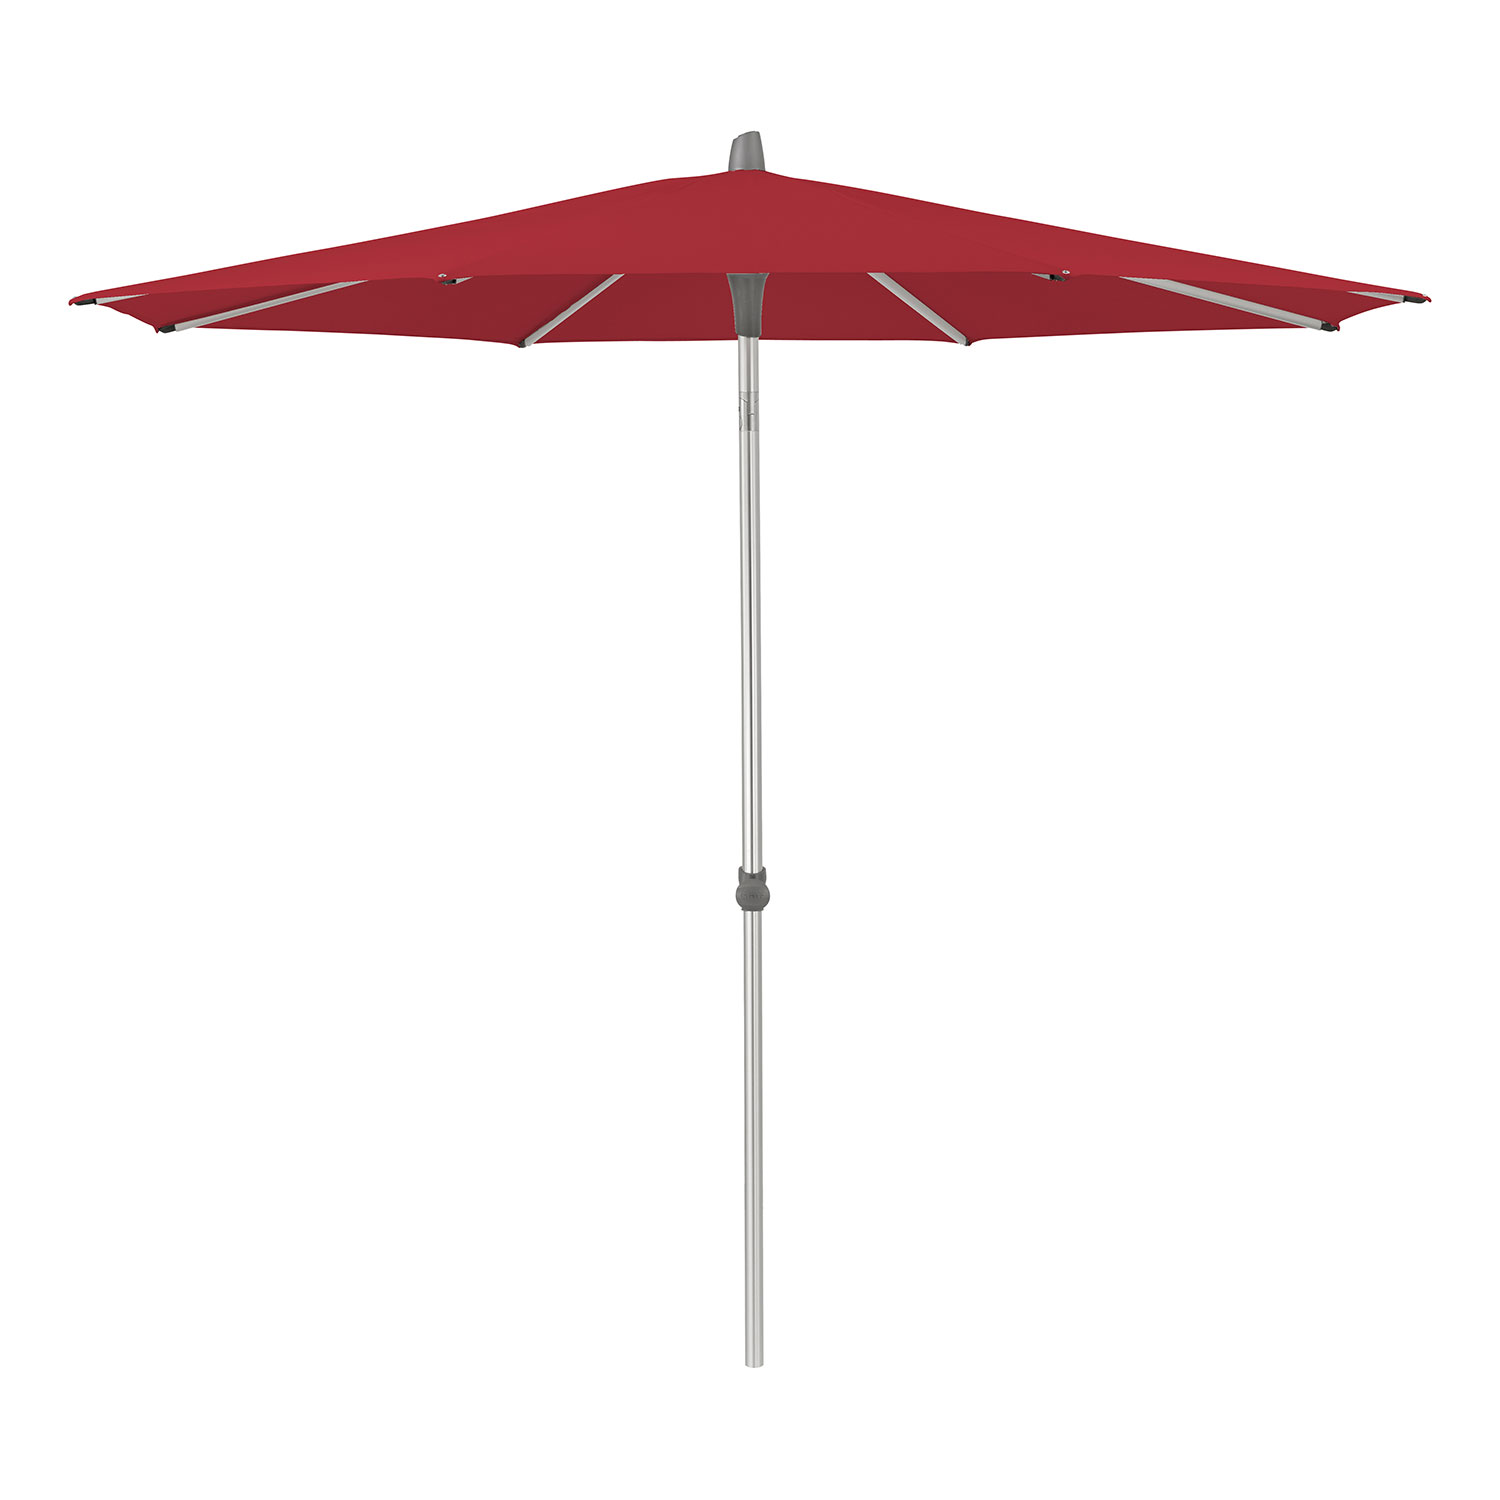 Glatz Alu-smart parasoll 200 cm kat.5 646 rubino